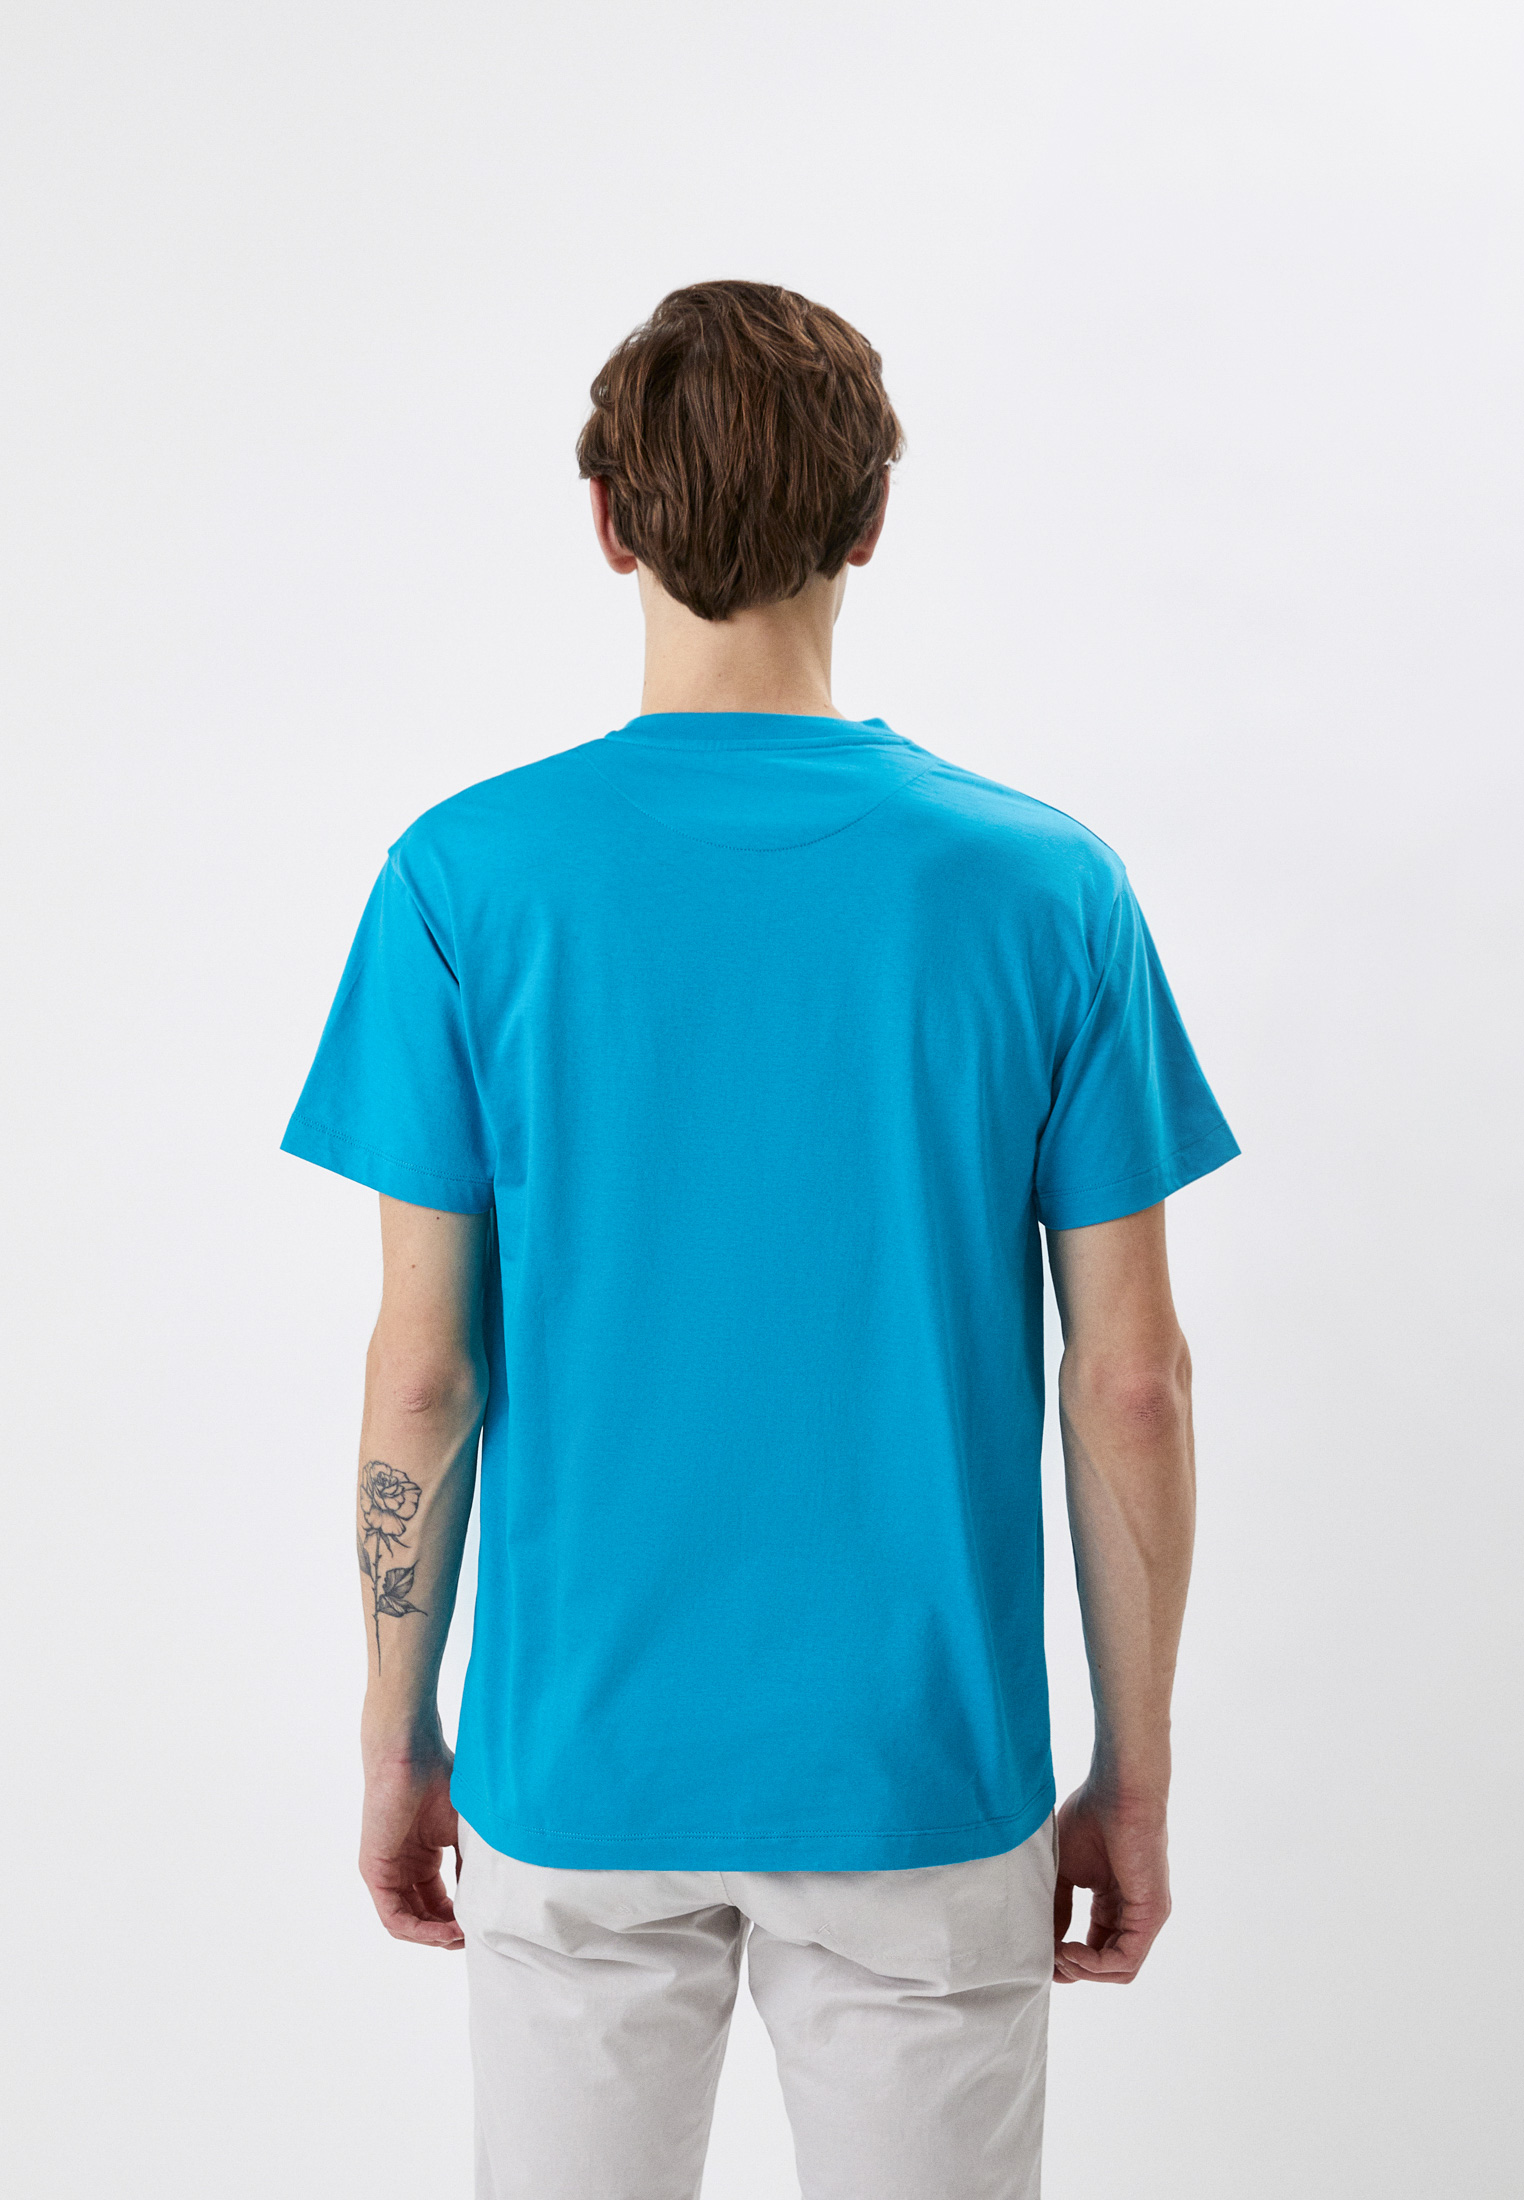 Мужская футболка Bikkembergs (Биккембергс) C411410M4349: изображение 3